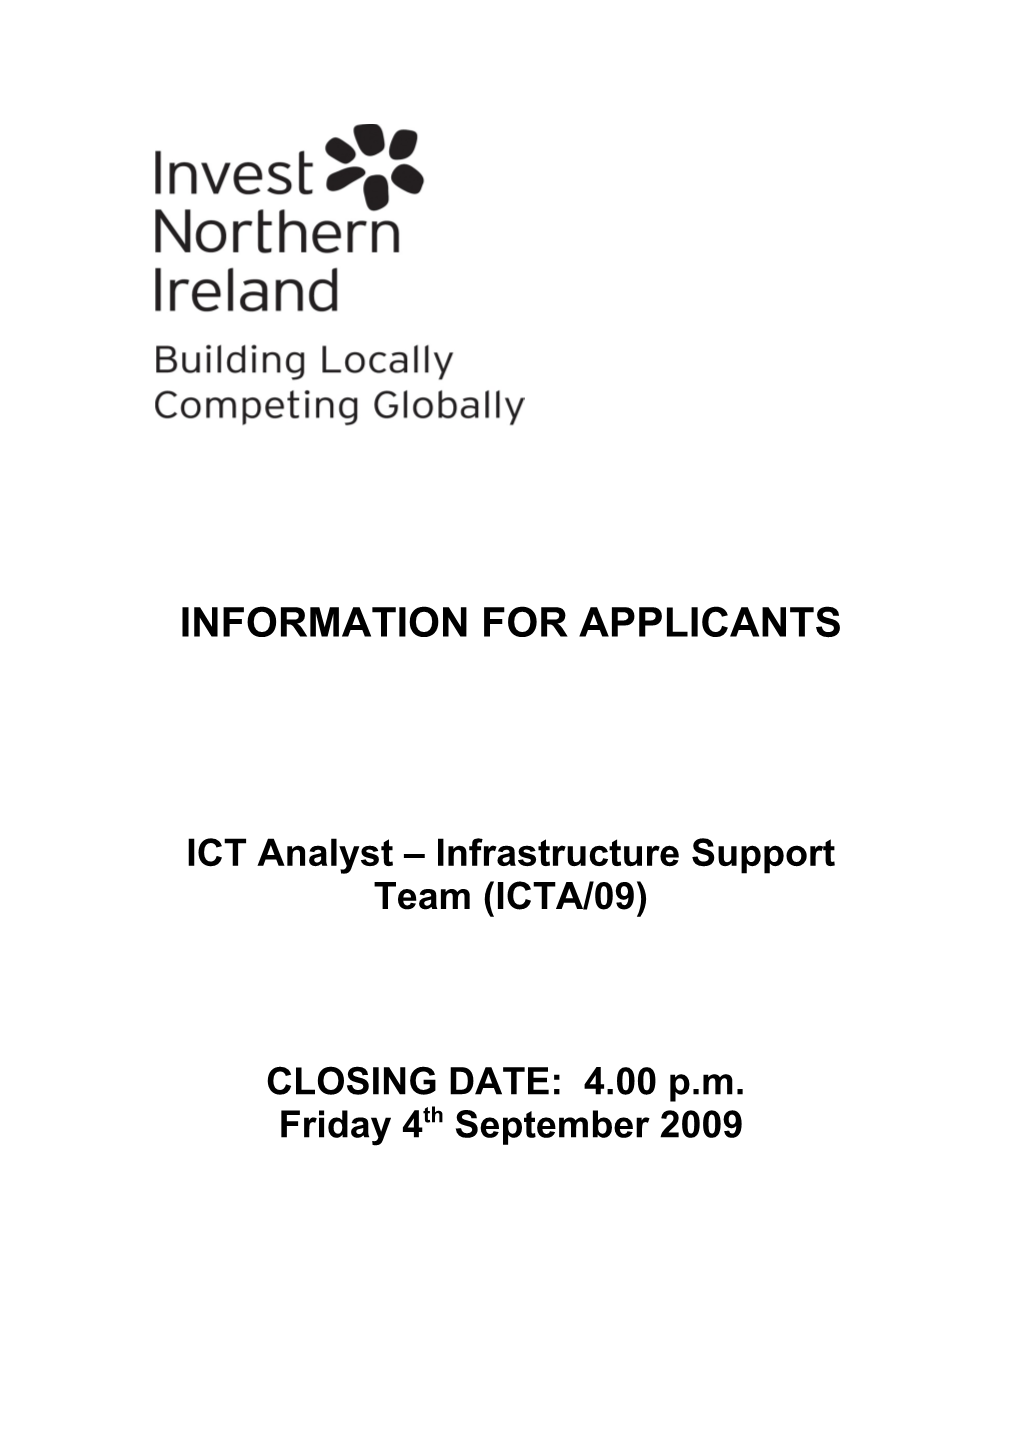 ICT Analyst Infrastructure Support Team (ICTA/09)